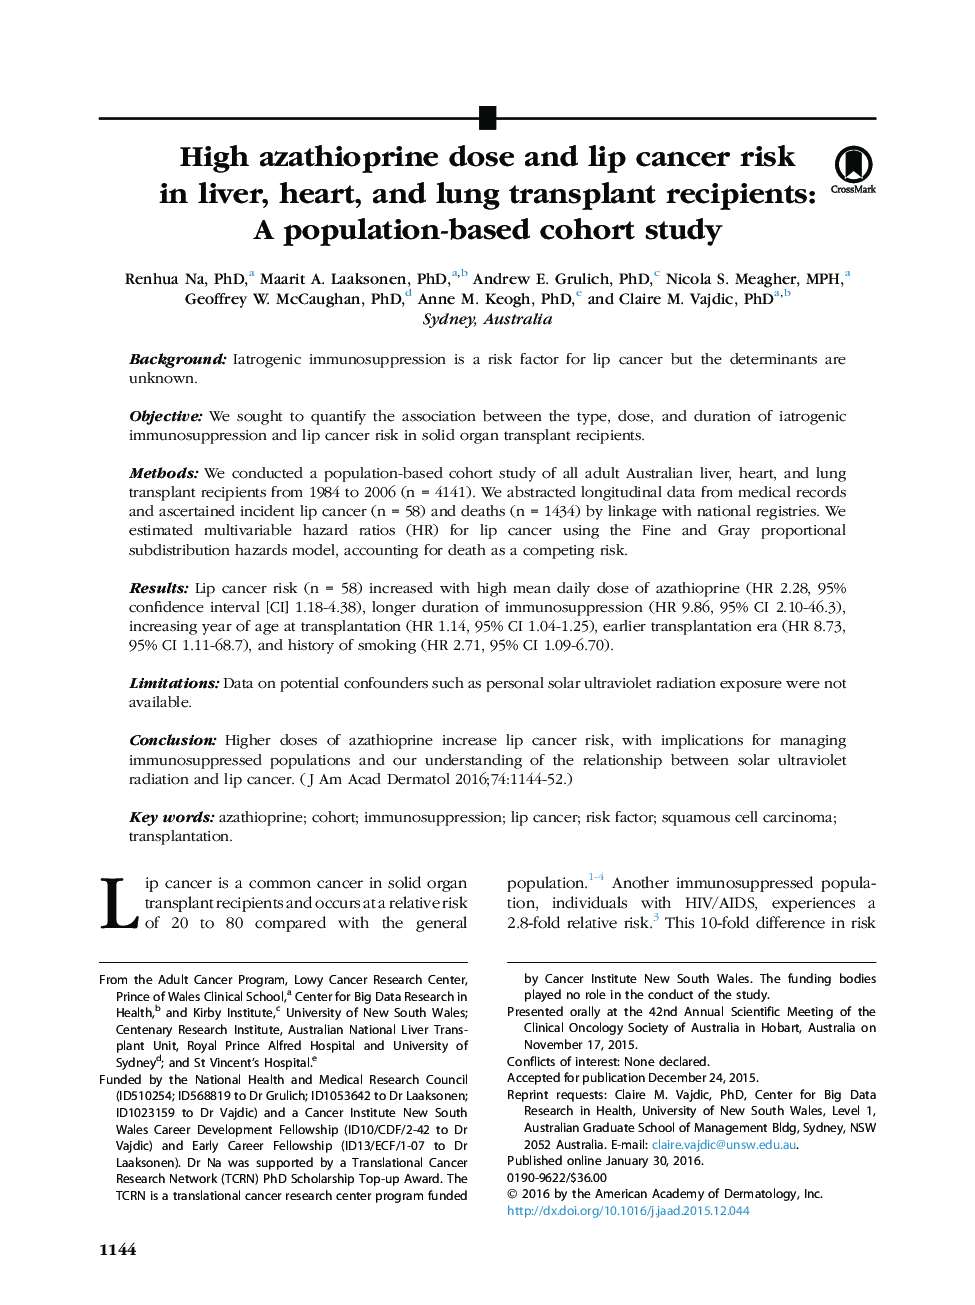 مقاله اصلی دوز آزاتیوپرین و خطر سرطان لب در گیرنده های کبد، قلب و پیوند ریه: مطالعه کوهورت مبتنی بر جمعیت 